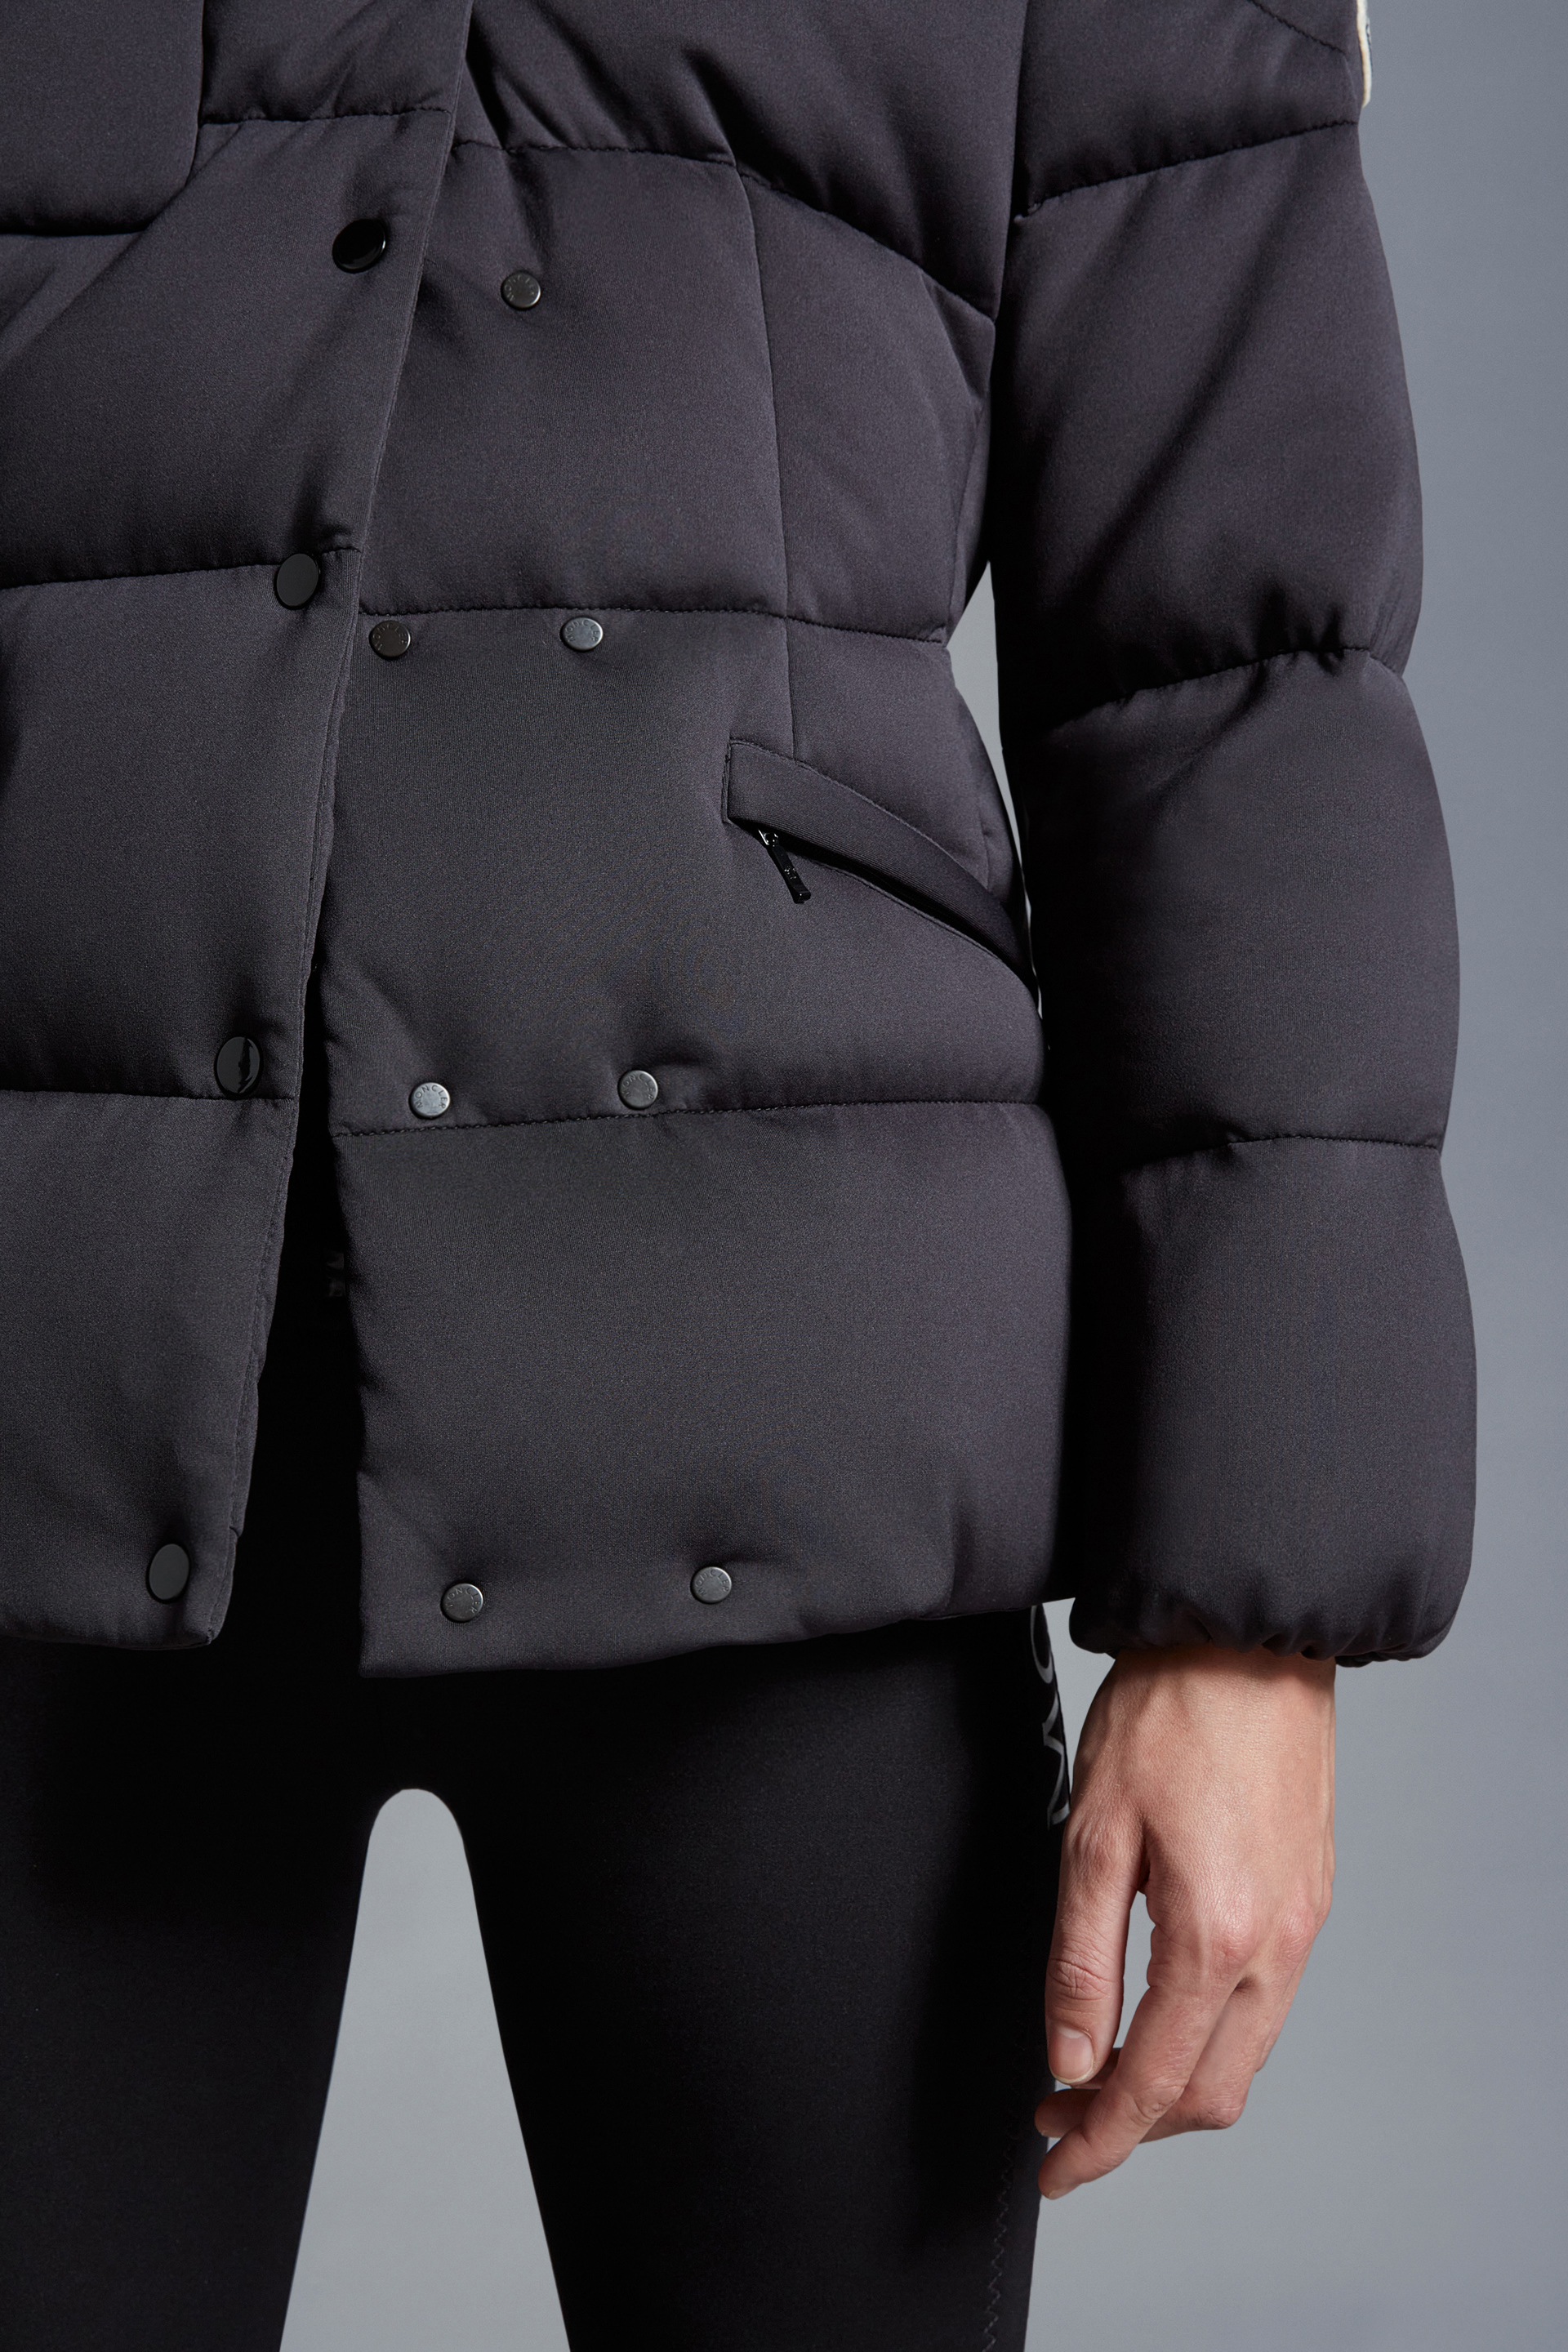 秋冬新品Moncler Karakorum女士短款羽绒服夹克外套黑色– 短款羽绒服